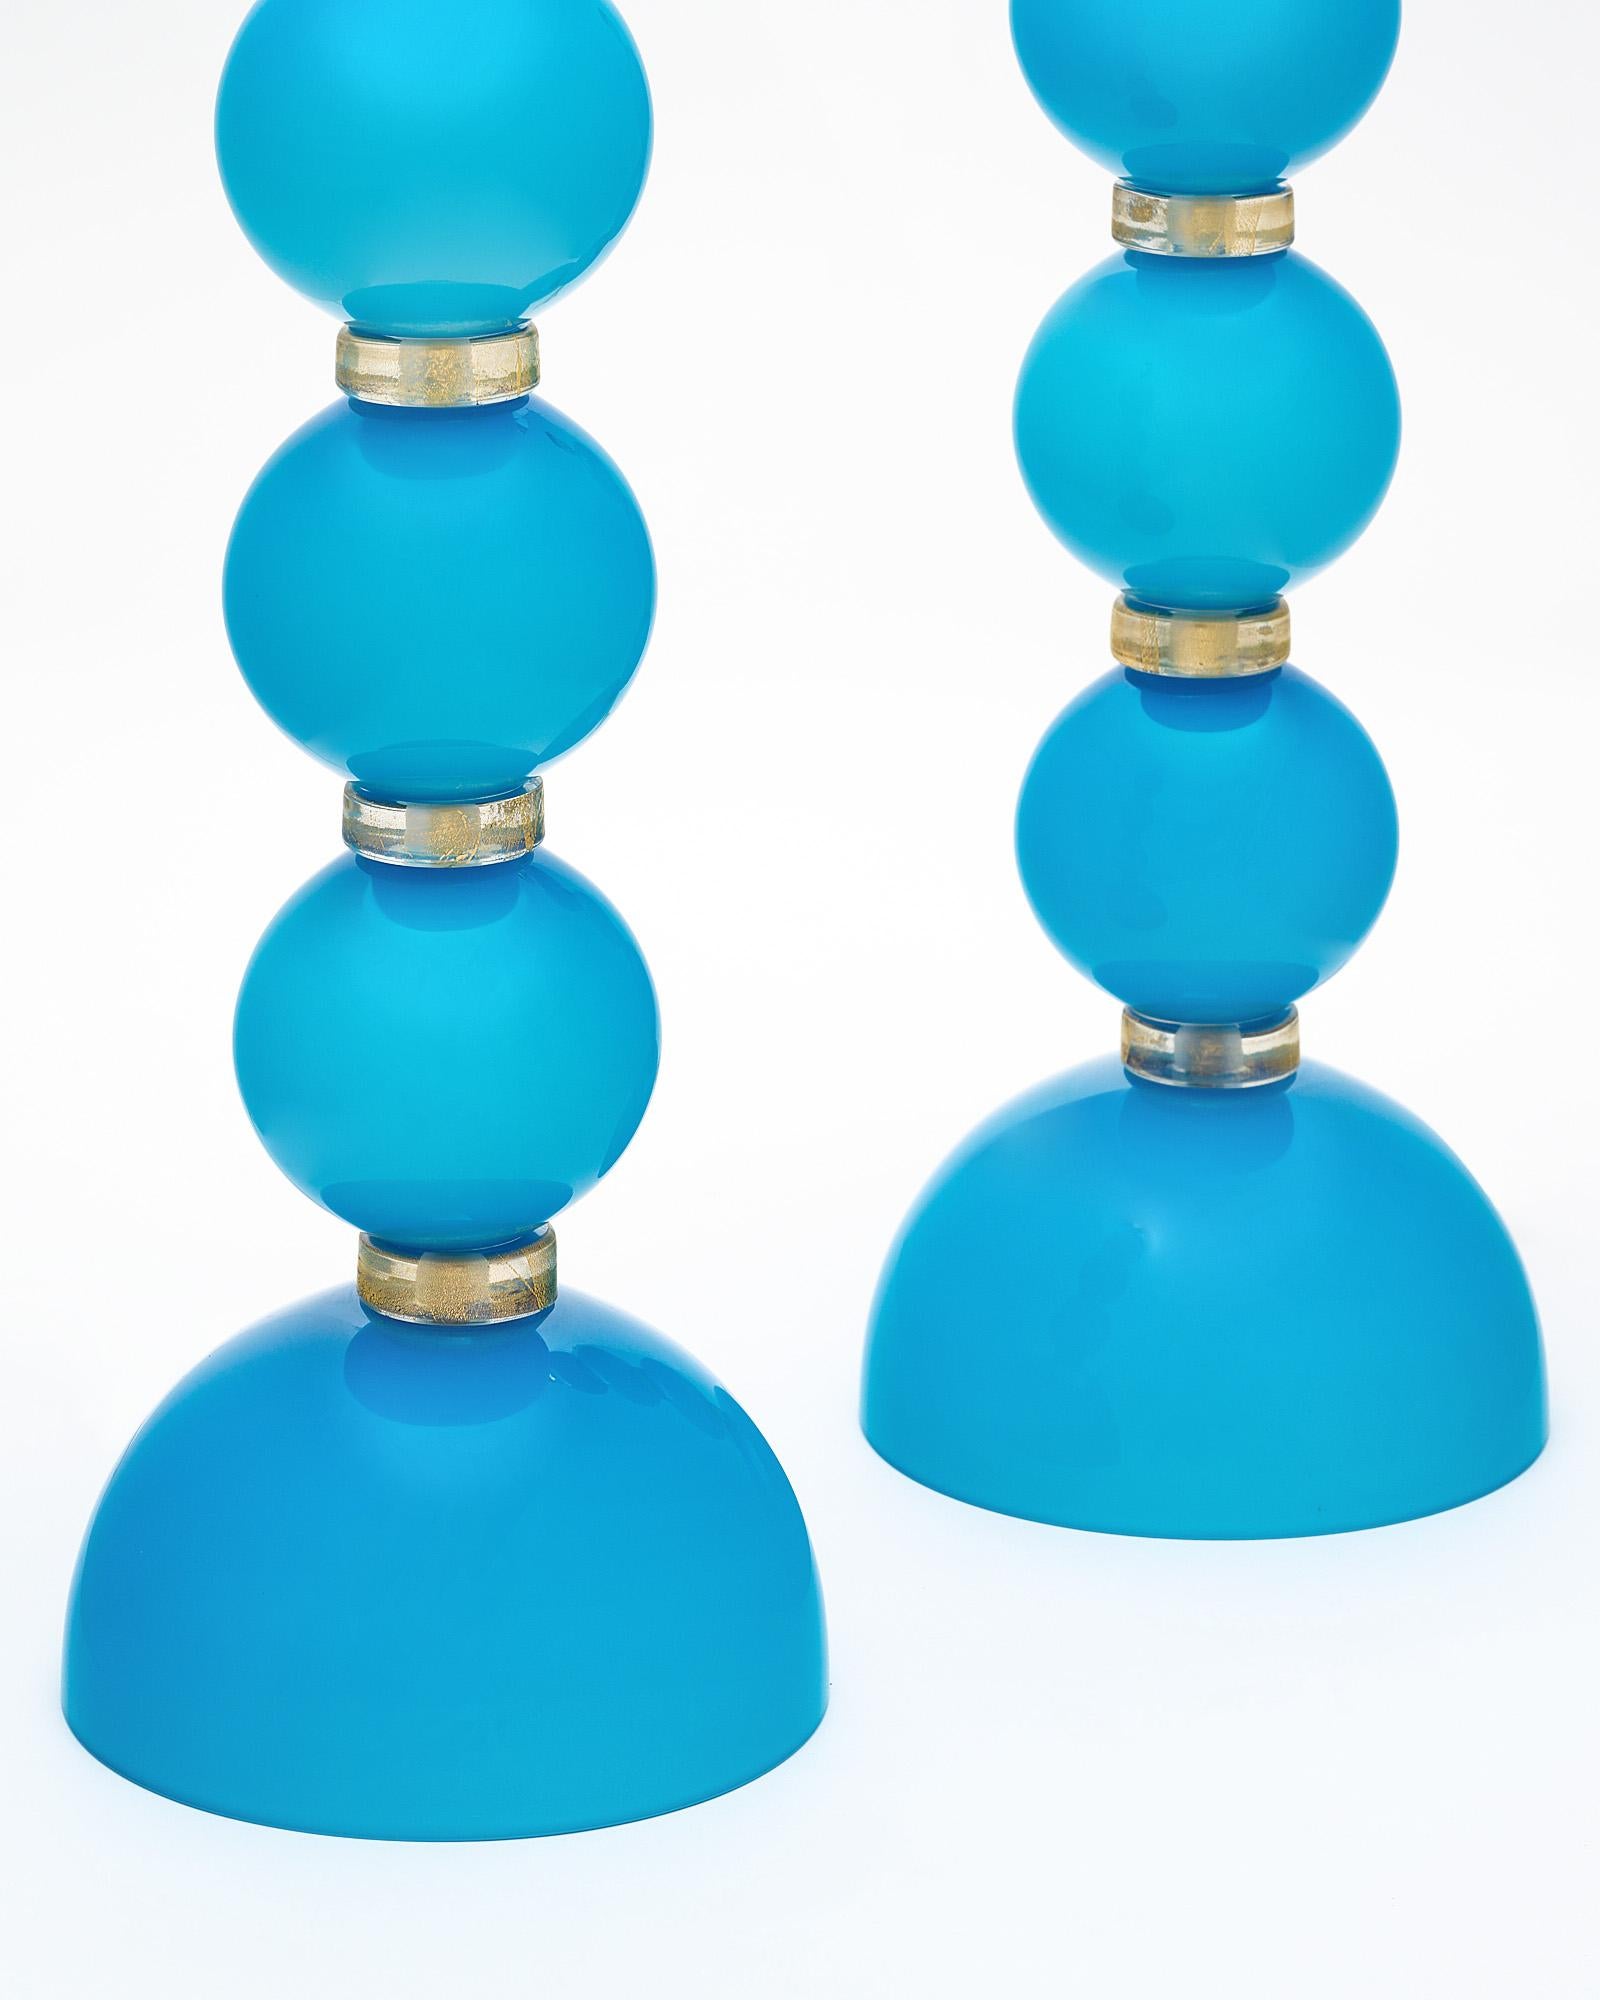 Tischlampen aus Murano-Glas von der Insel Murano in der Nähe von Venedig, Italien. Dieses mundgeblasene Paar besticht durch die leuchtende türkise Farbe der Glaselemente. Sie wurden neu verkabelt, um den US-Normen zu entsprechen.
